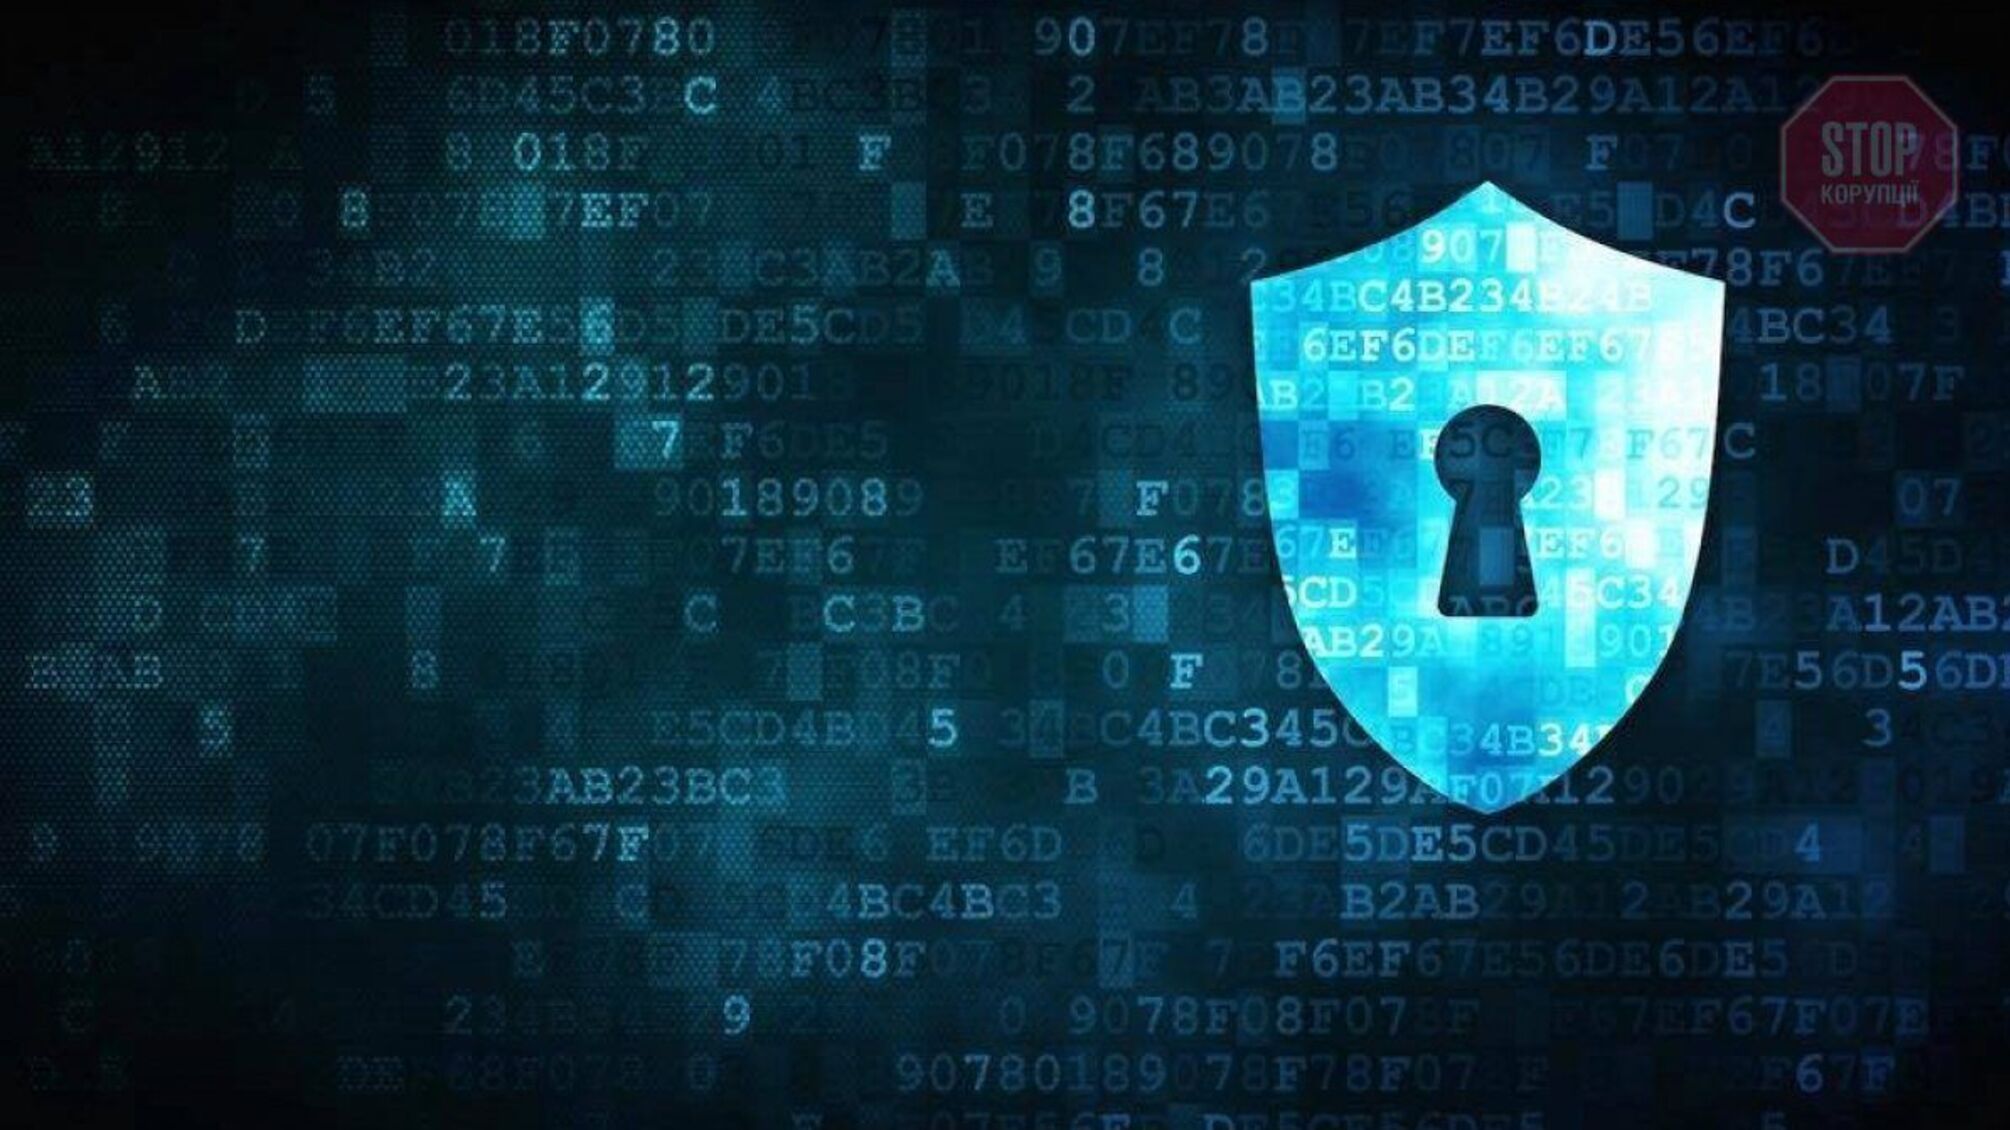 Не відкривайте листи з судів: про нові атаки хакерів попереджає Центр кібербезпеки (фото)